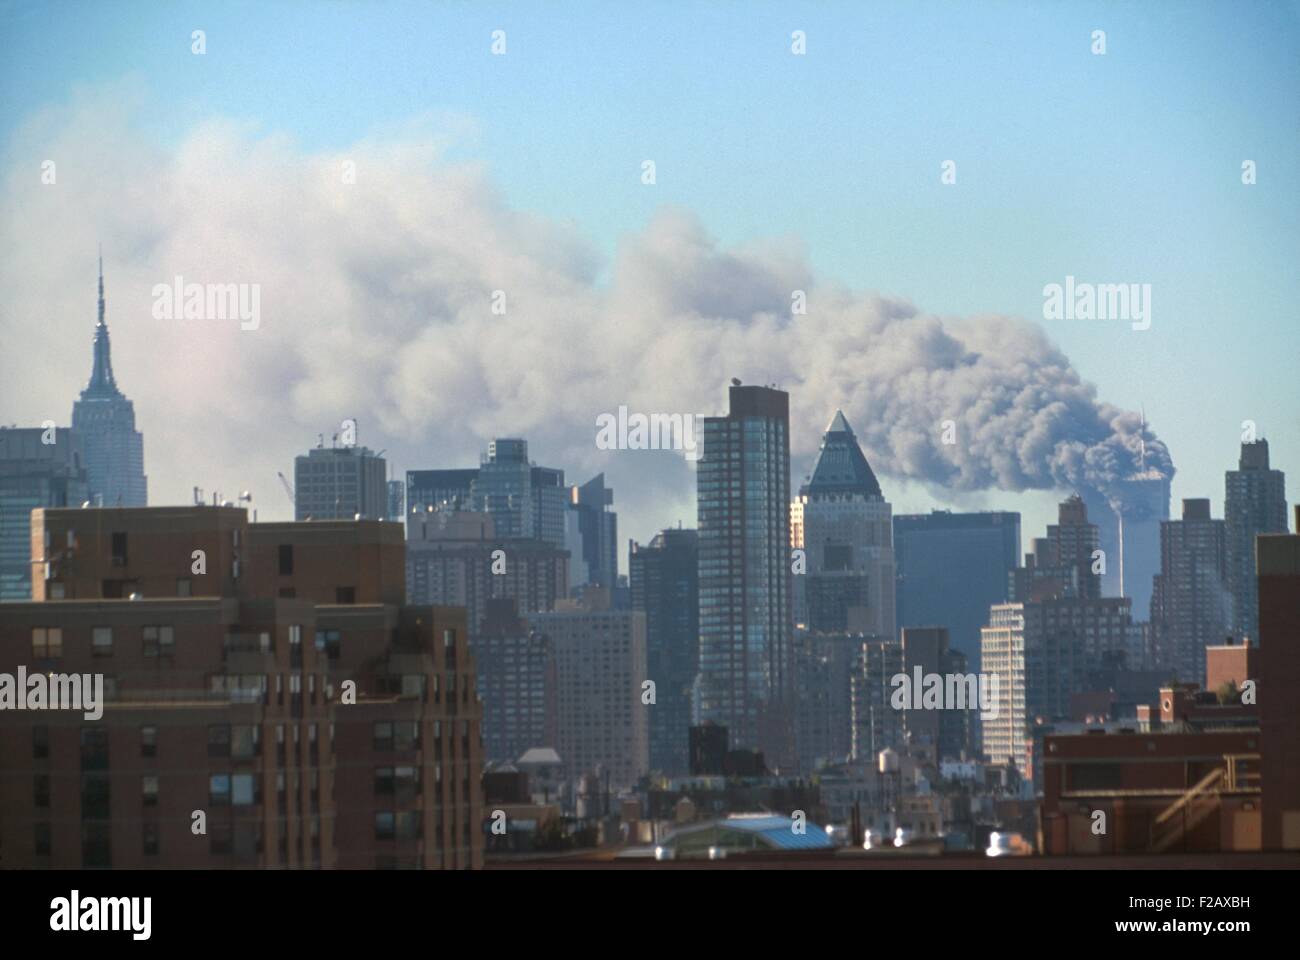 Fumo billowing dal Twin Towers dopo settembre undicesimo attacco terroristico contro il World Trade Center. Foto scattata dal Midtown West vicino al sessantesimo street entro i primi 72 minuti dell'attacco. La città di New York, settembre 11, 2001. (BSLOC 2015 2 39) Foto Stock